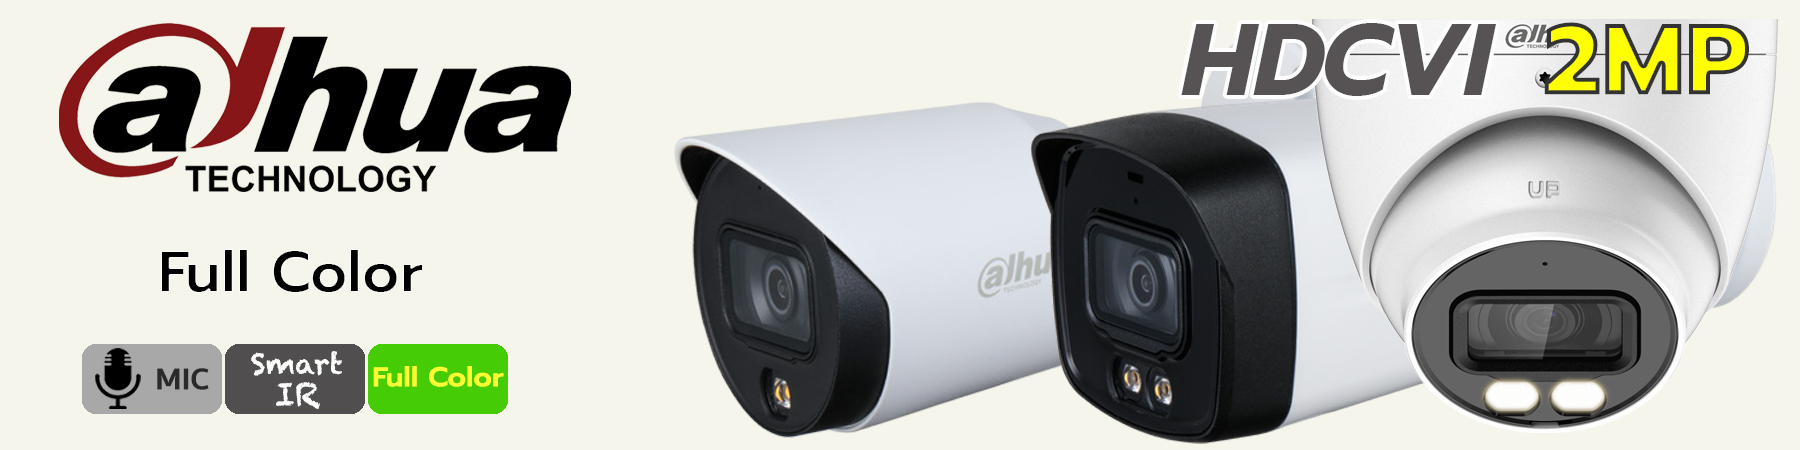 กล้องวงจรปิด Dahua Full Color, Dahua Built-in Mic, Dahua ไมค์บันทึกเสียง, HFW1239T-A-LED, HFW1239TLM-A-LED, HDW1239TL-A-LED, HDW1239T-A-LED, HFW1239TU-Z-A-LED, HDW1239T-Z-A-LED, HFW2249E-A-LED, HFW2249T-I8-A-LED, HDW2249T-A-LED